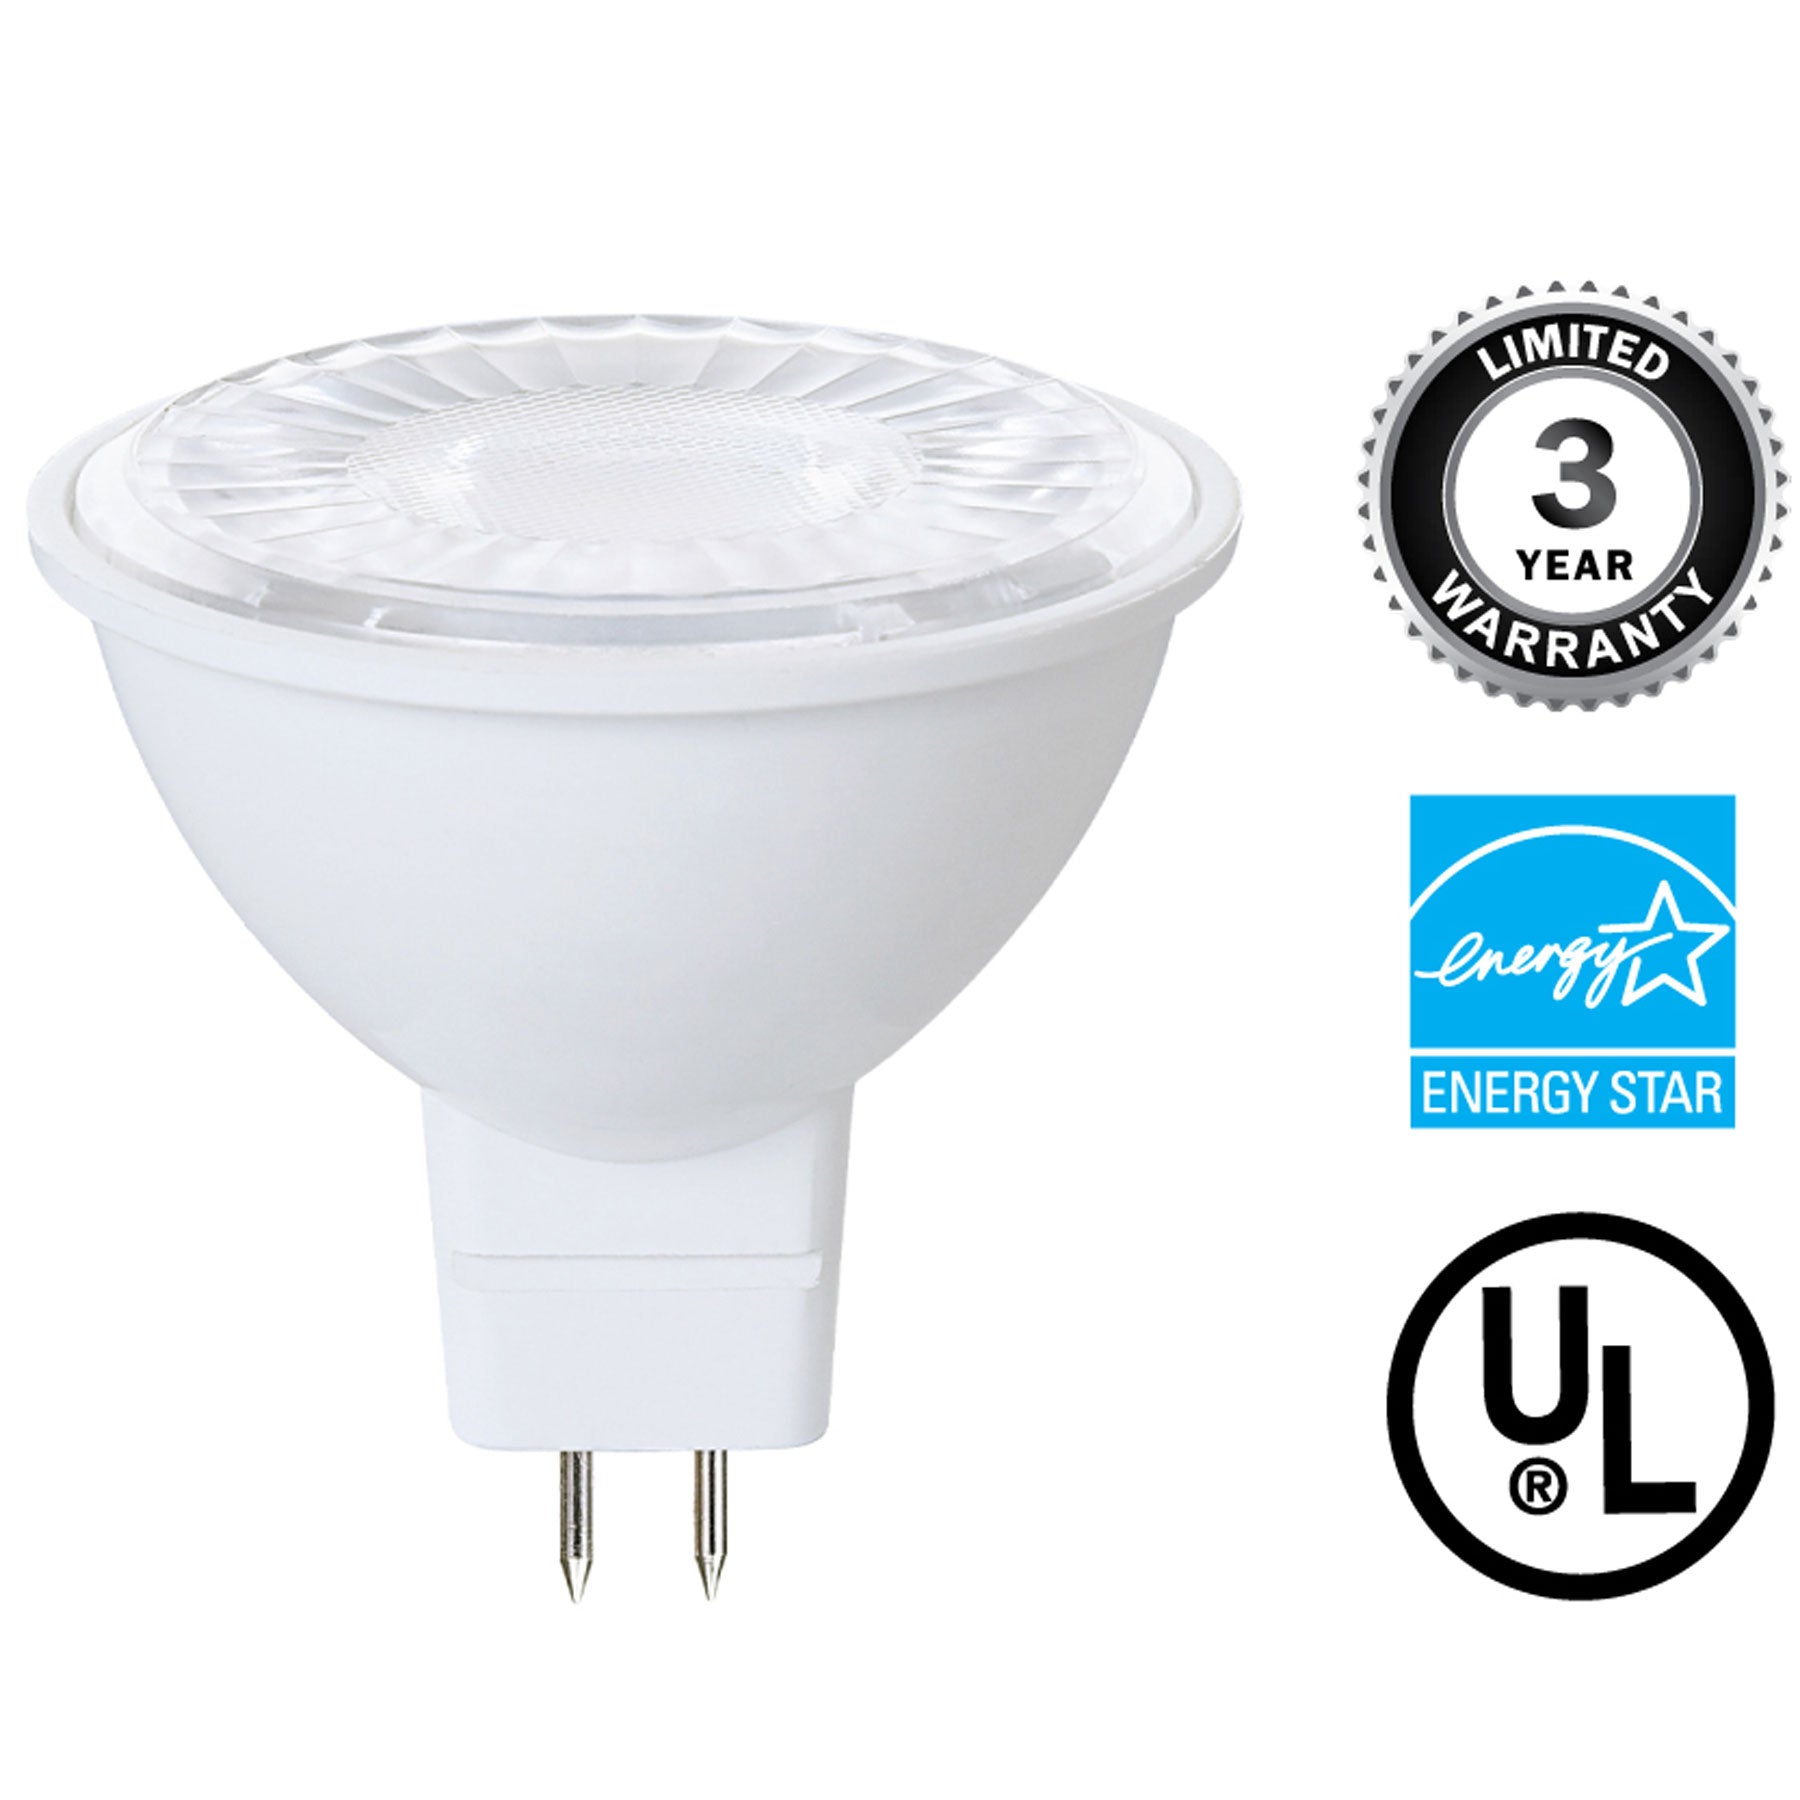 Led Mr16 Gu5.3 120v 2700k - GU5.3 LED Light Bulbs, Warm White